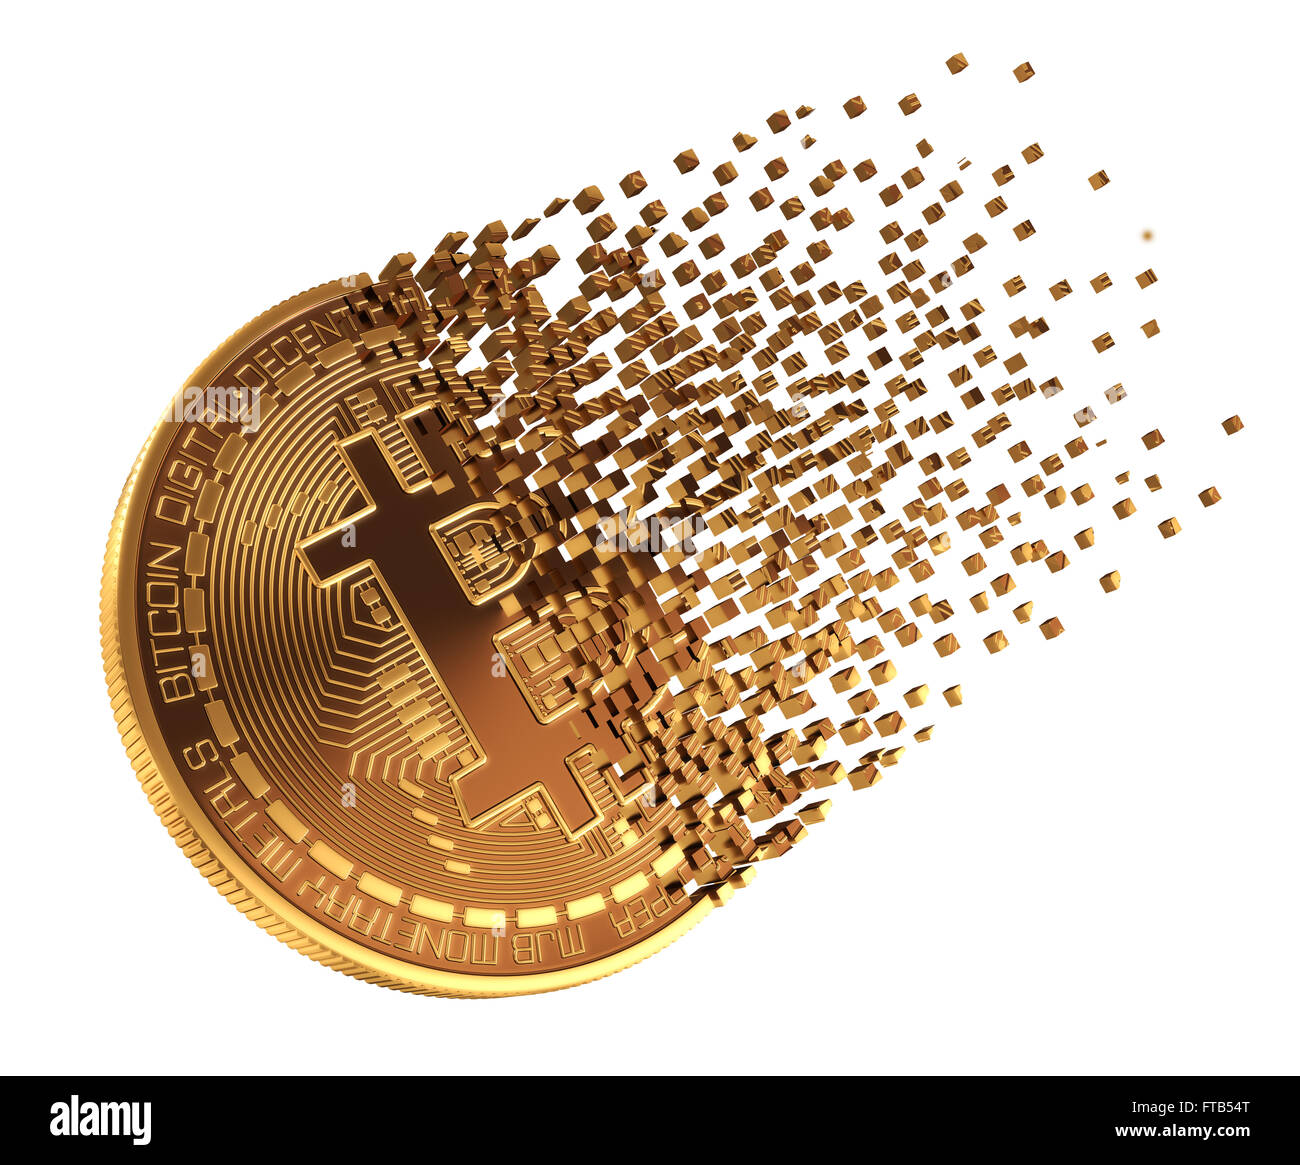 Bitcoin Falls Apart To Pixels. 3D Model. Stock Photo